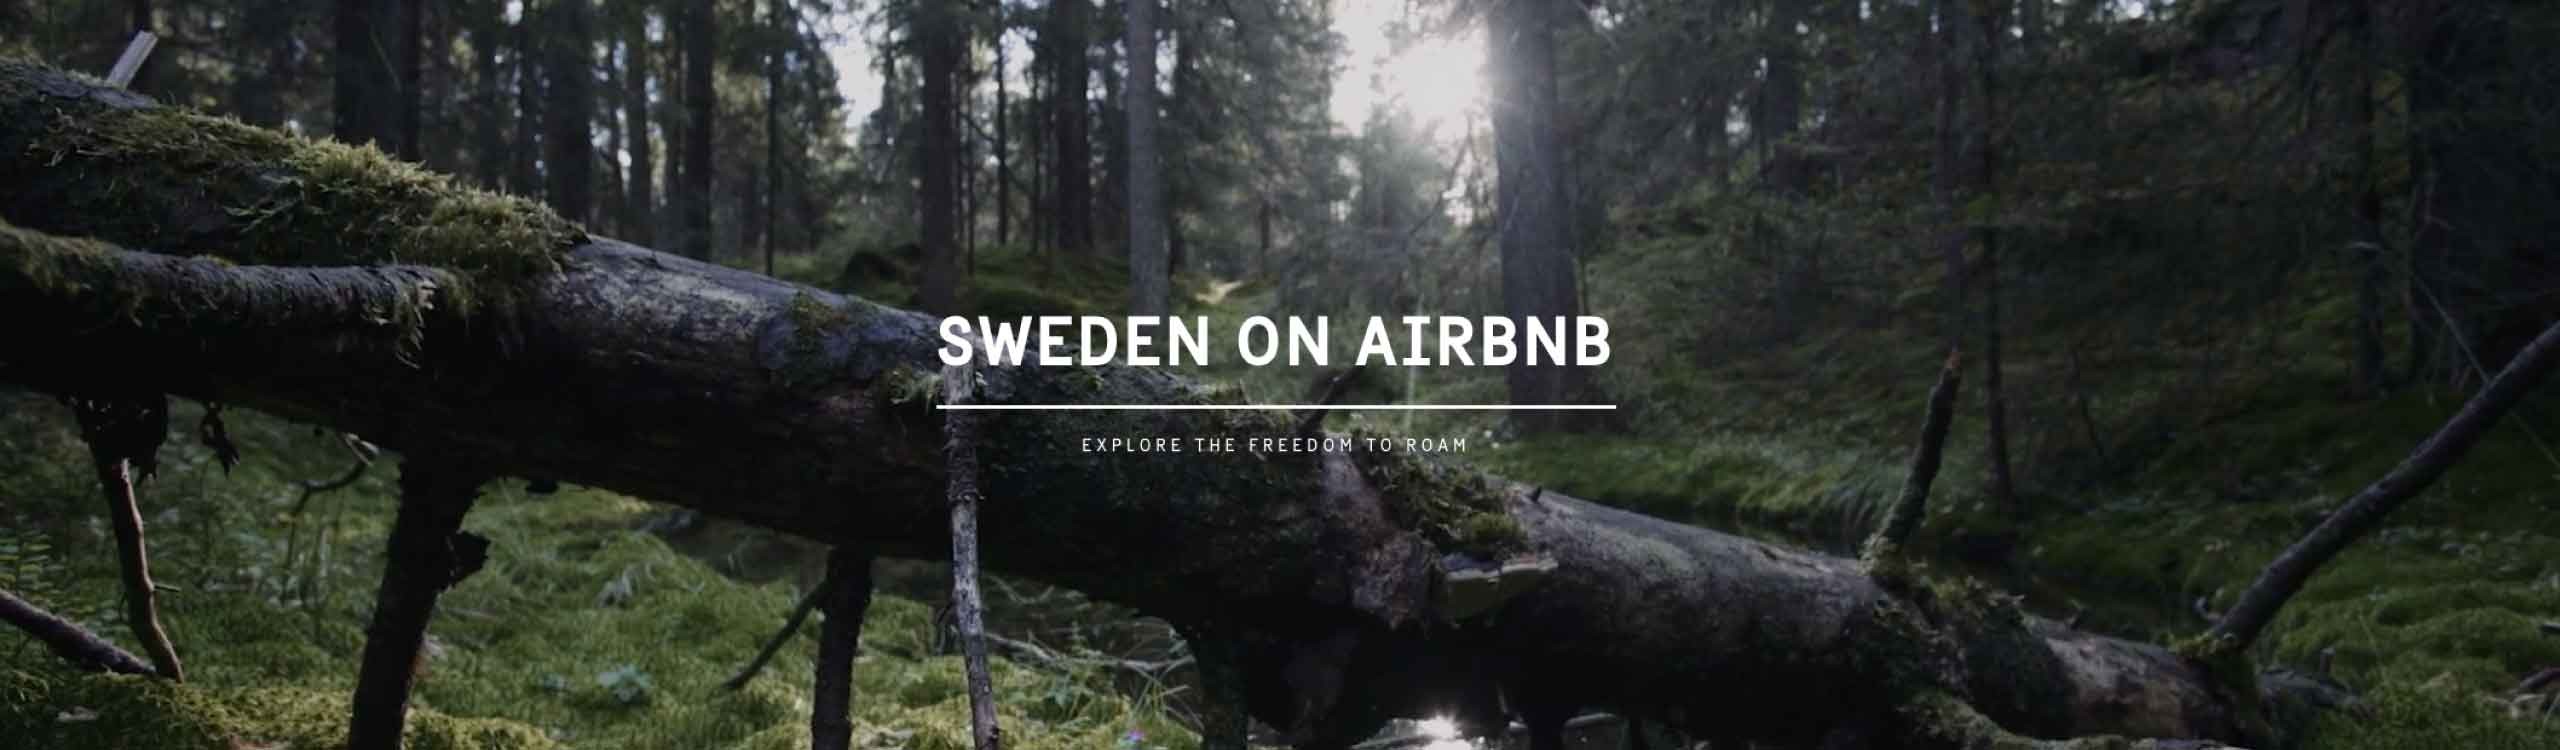 suecia airbnb mis gafas de pasta destacado